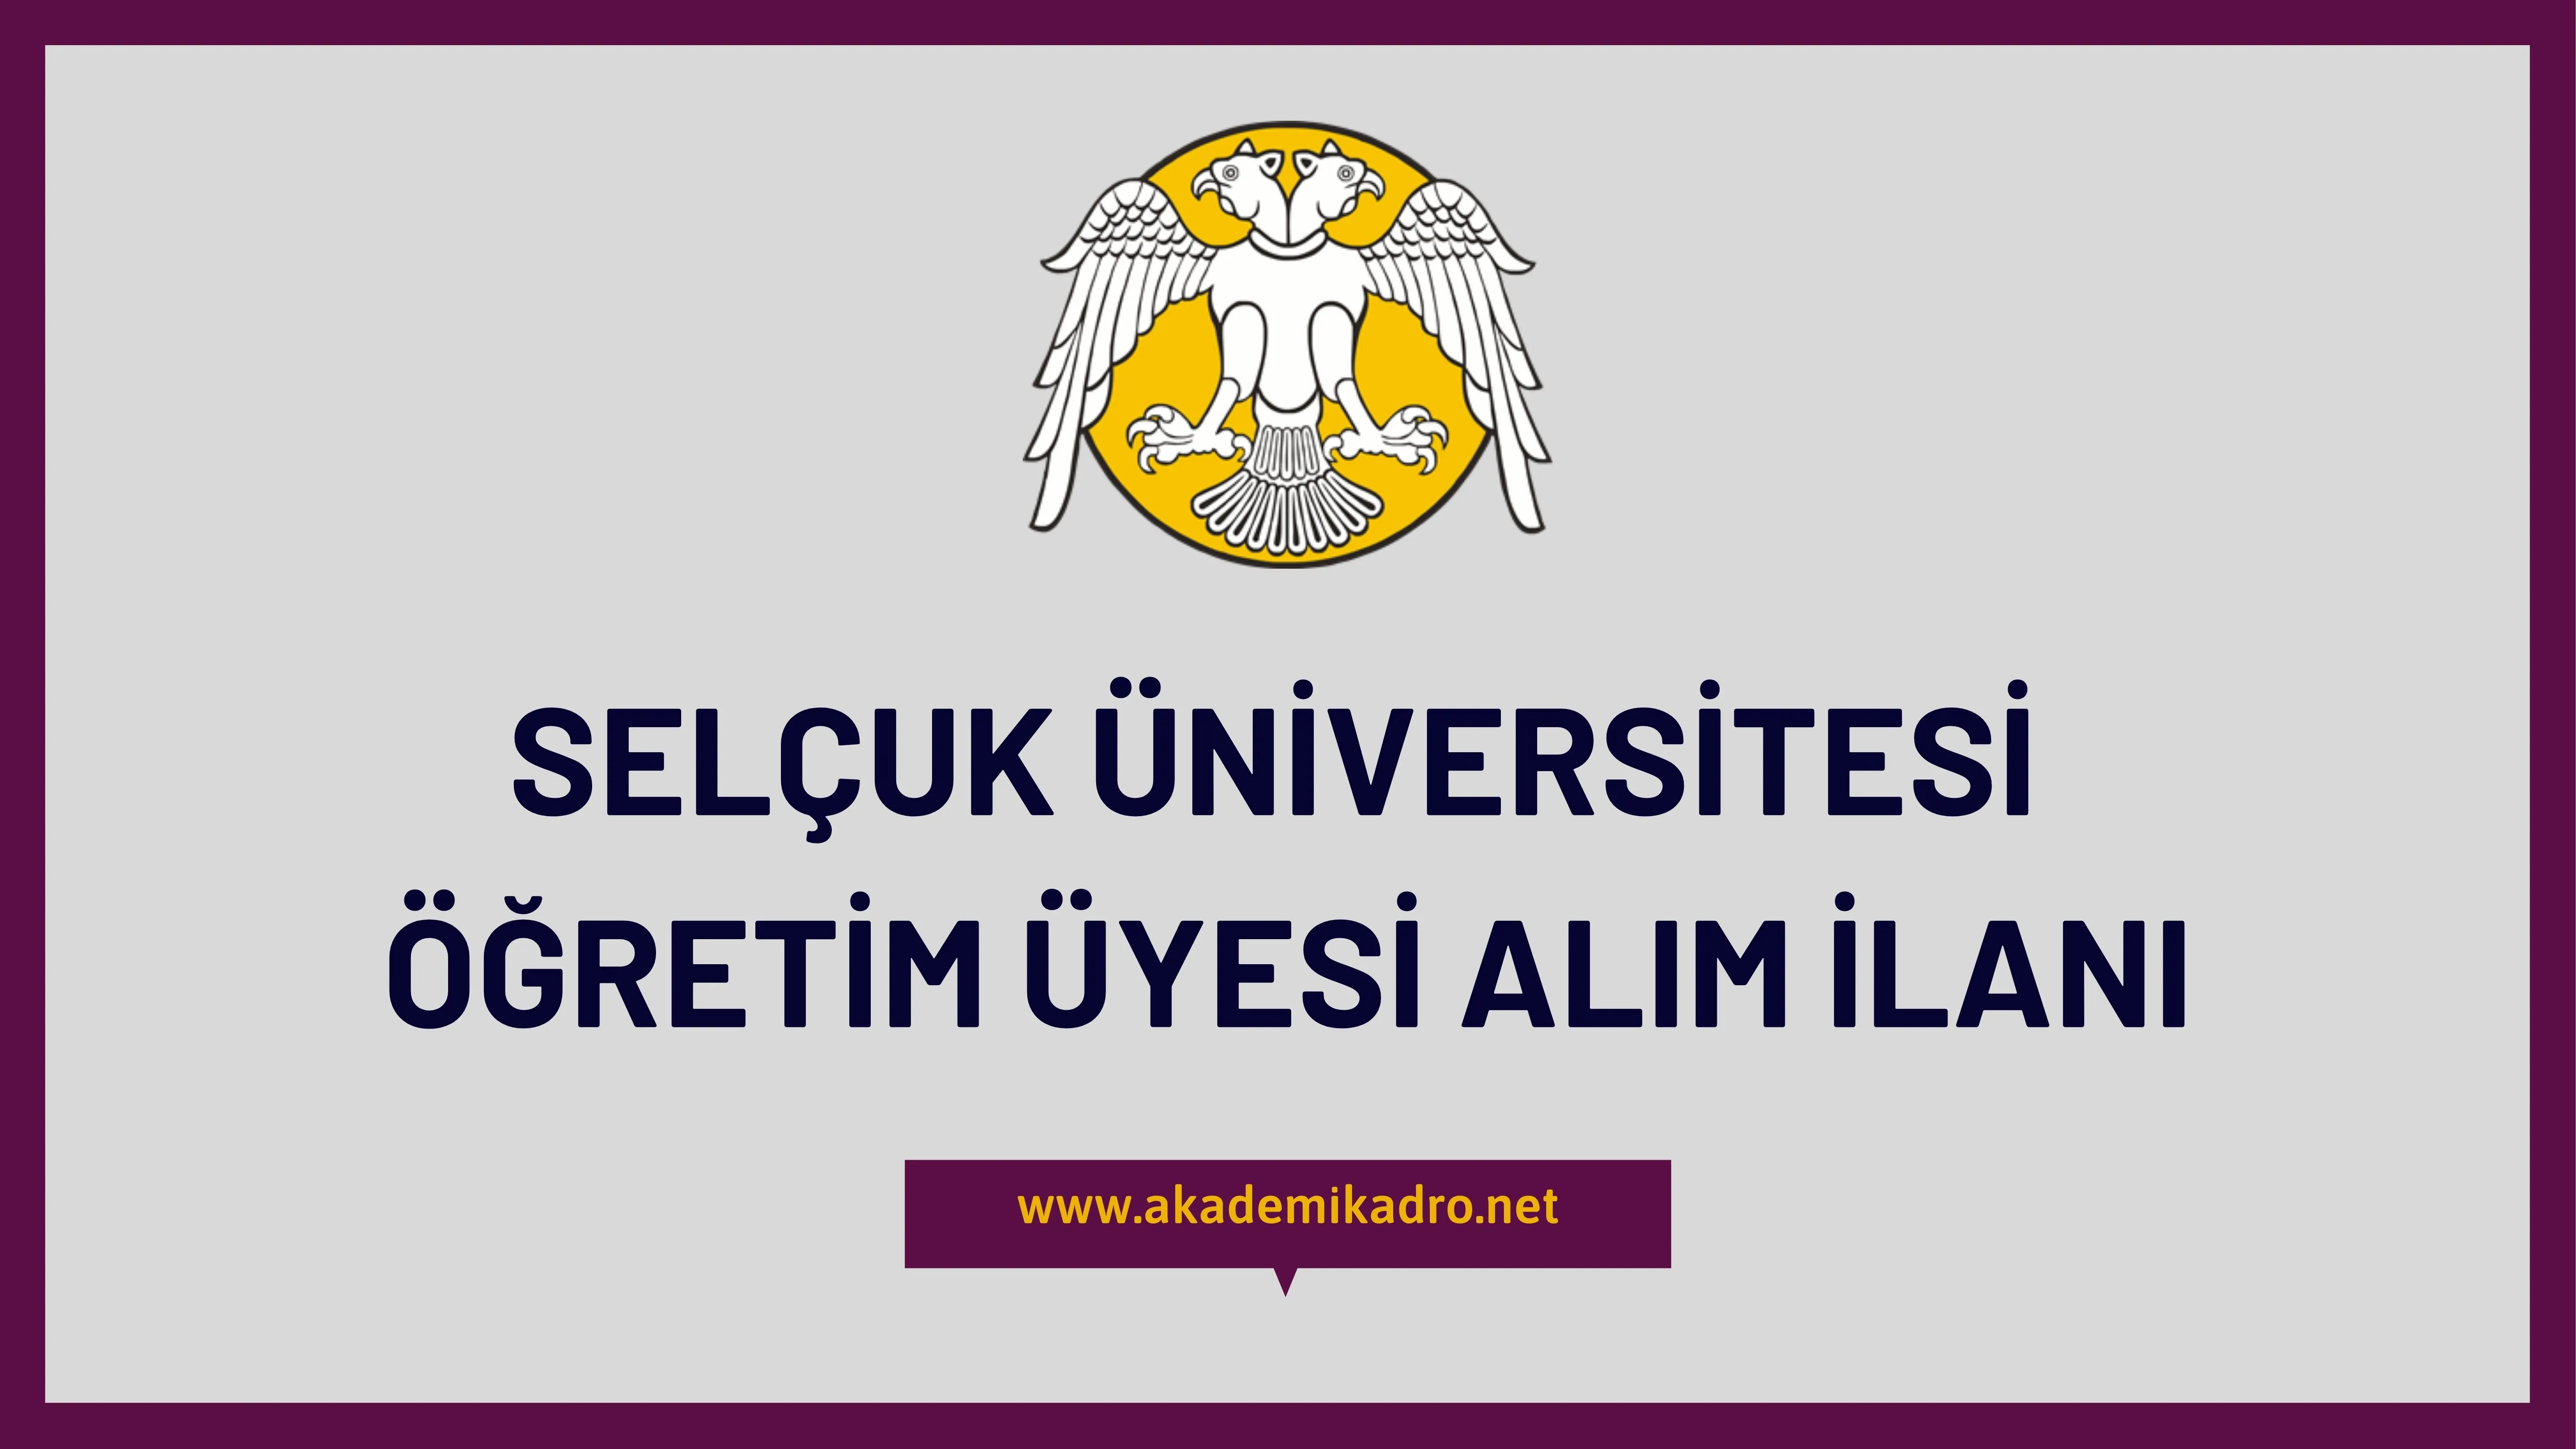 Selçuk Üniversitesi 63 akademik personel alacaktır.